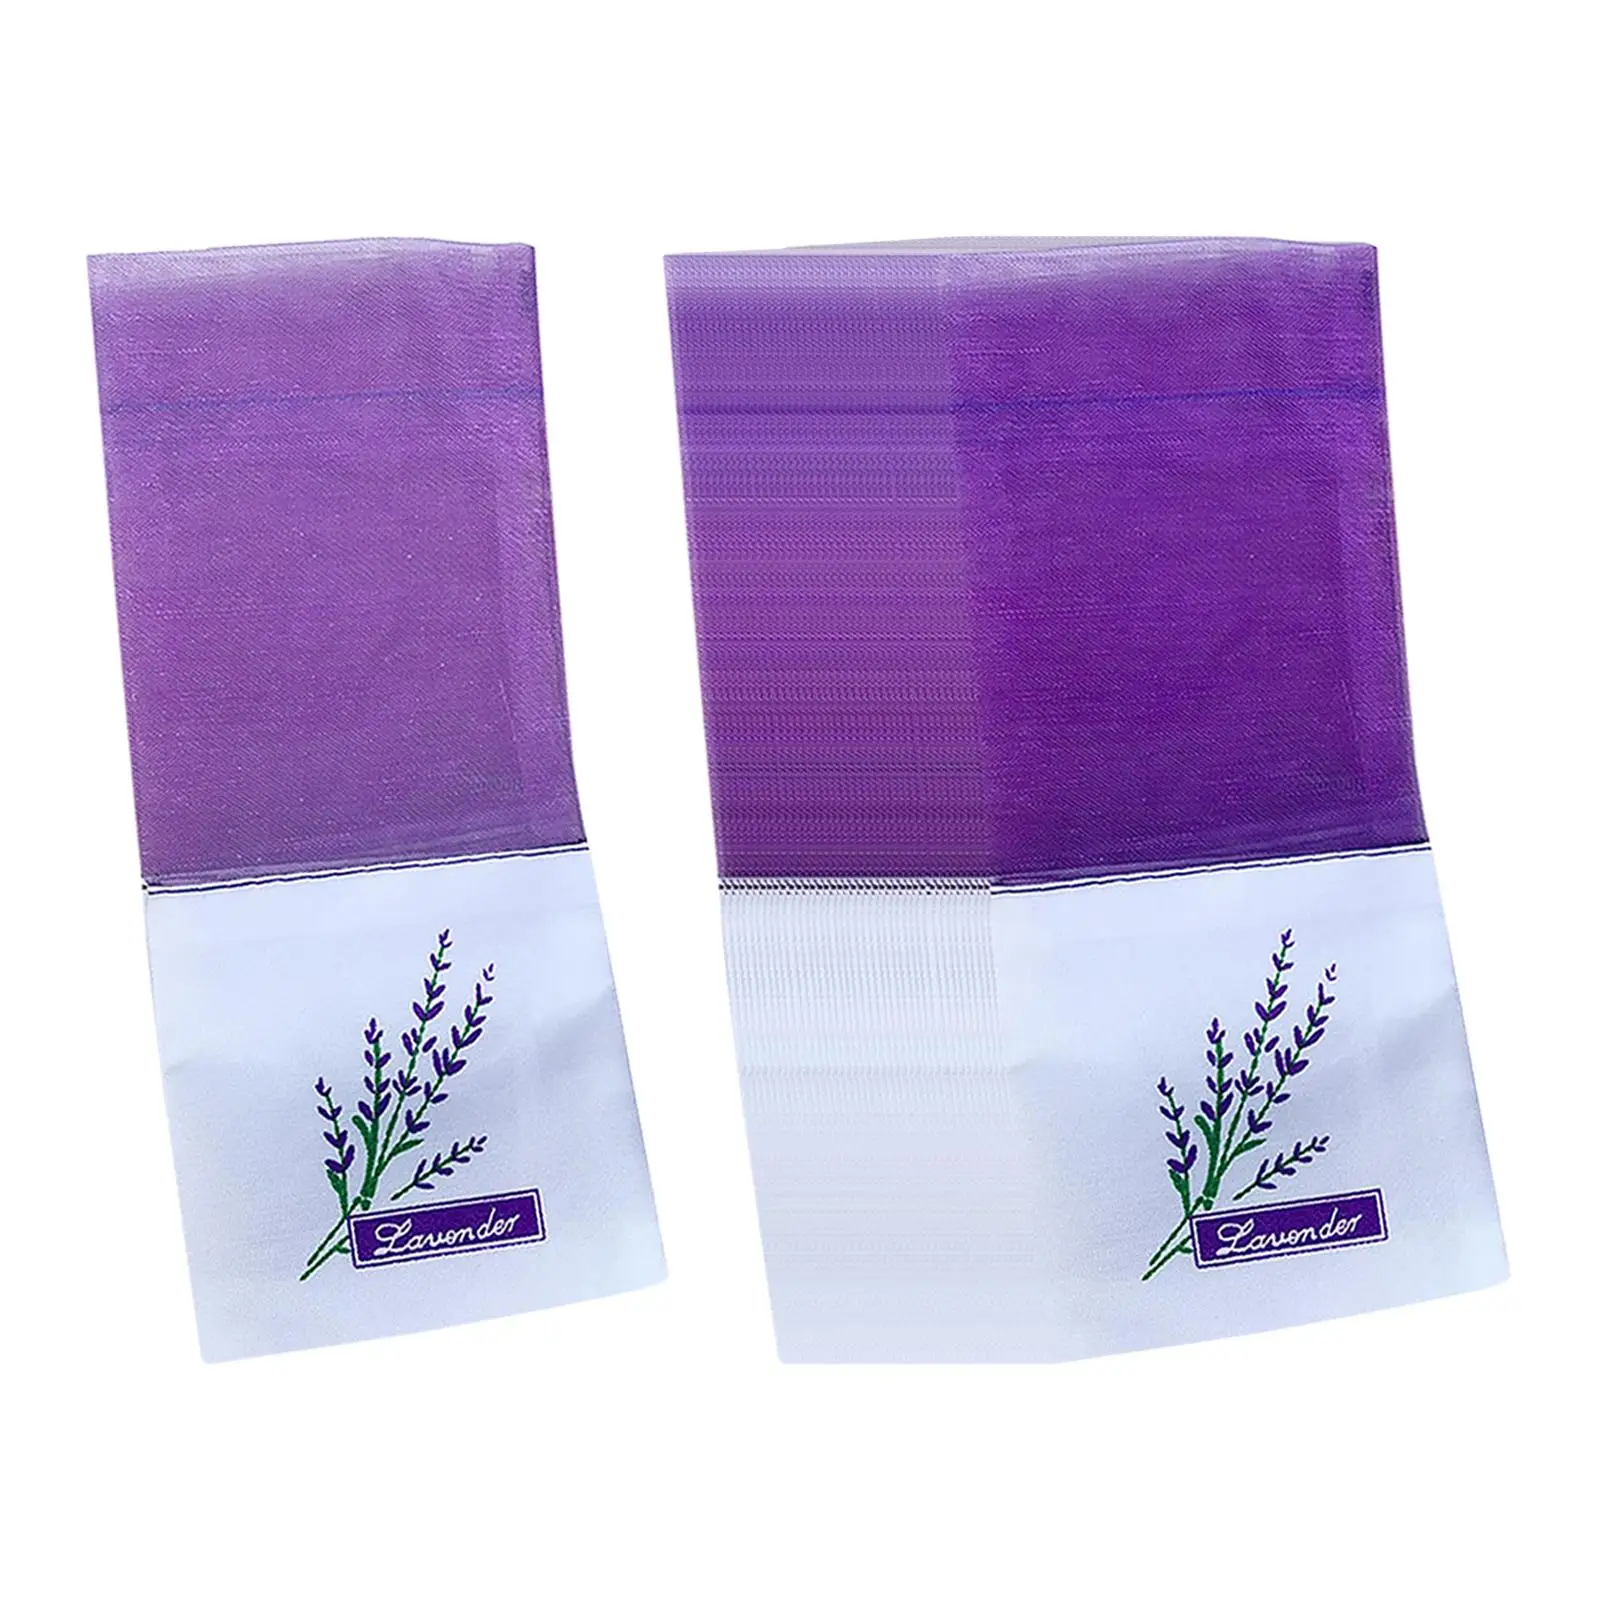 40x Empty Sachet Bag Reusable Portable for Lavender Spice Multi Purpose Party